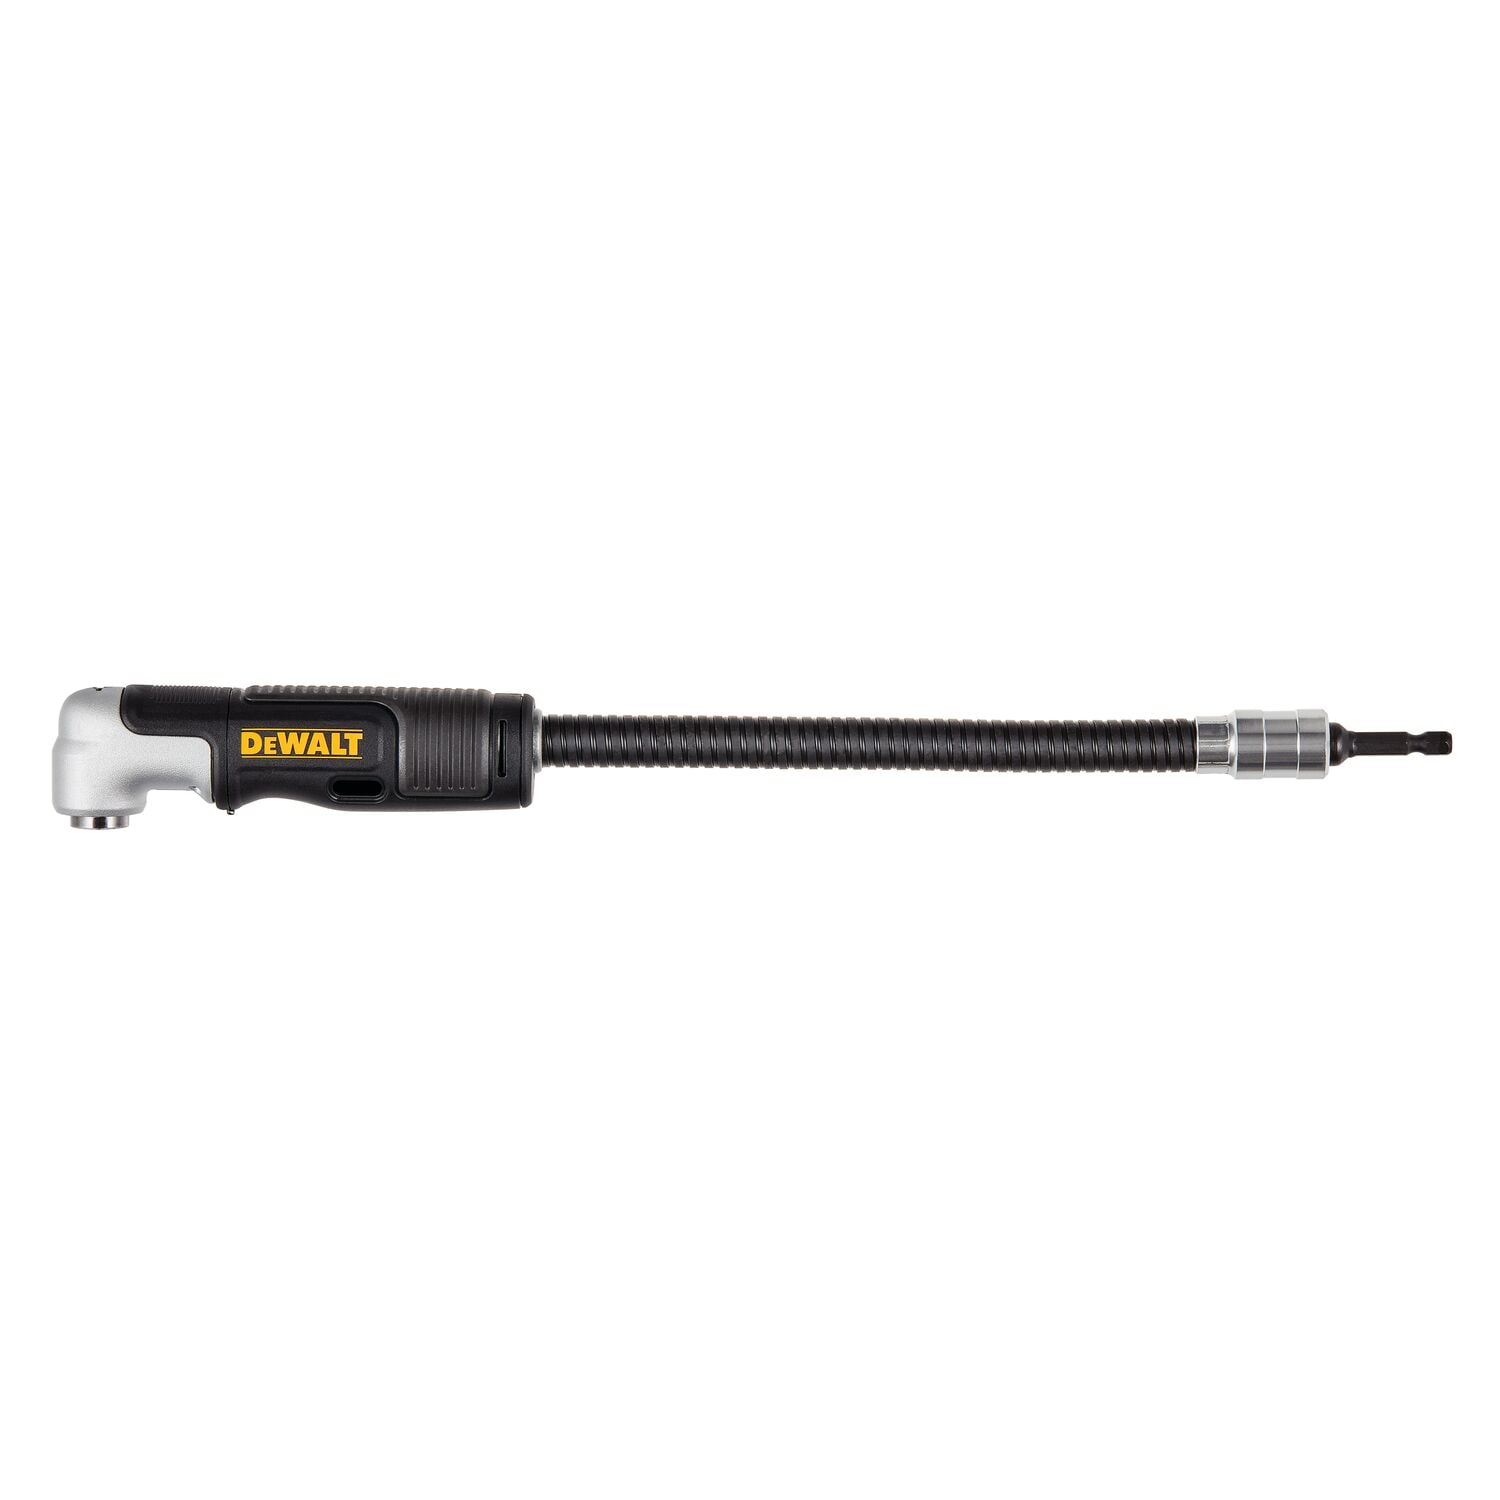 DEWALT DWAMRASETFT DEWALT Right Angle Drill Adaptor, All-in-1, Stubby, Flex  Shaft, 12-Inch